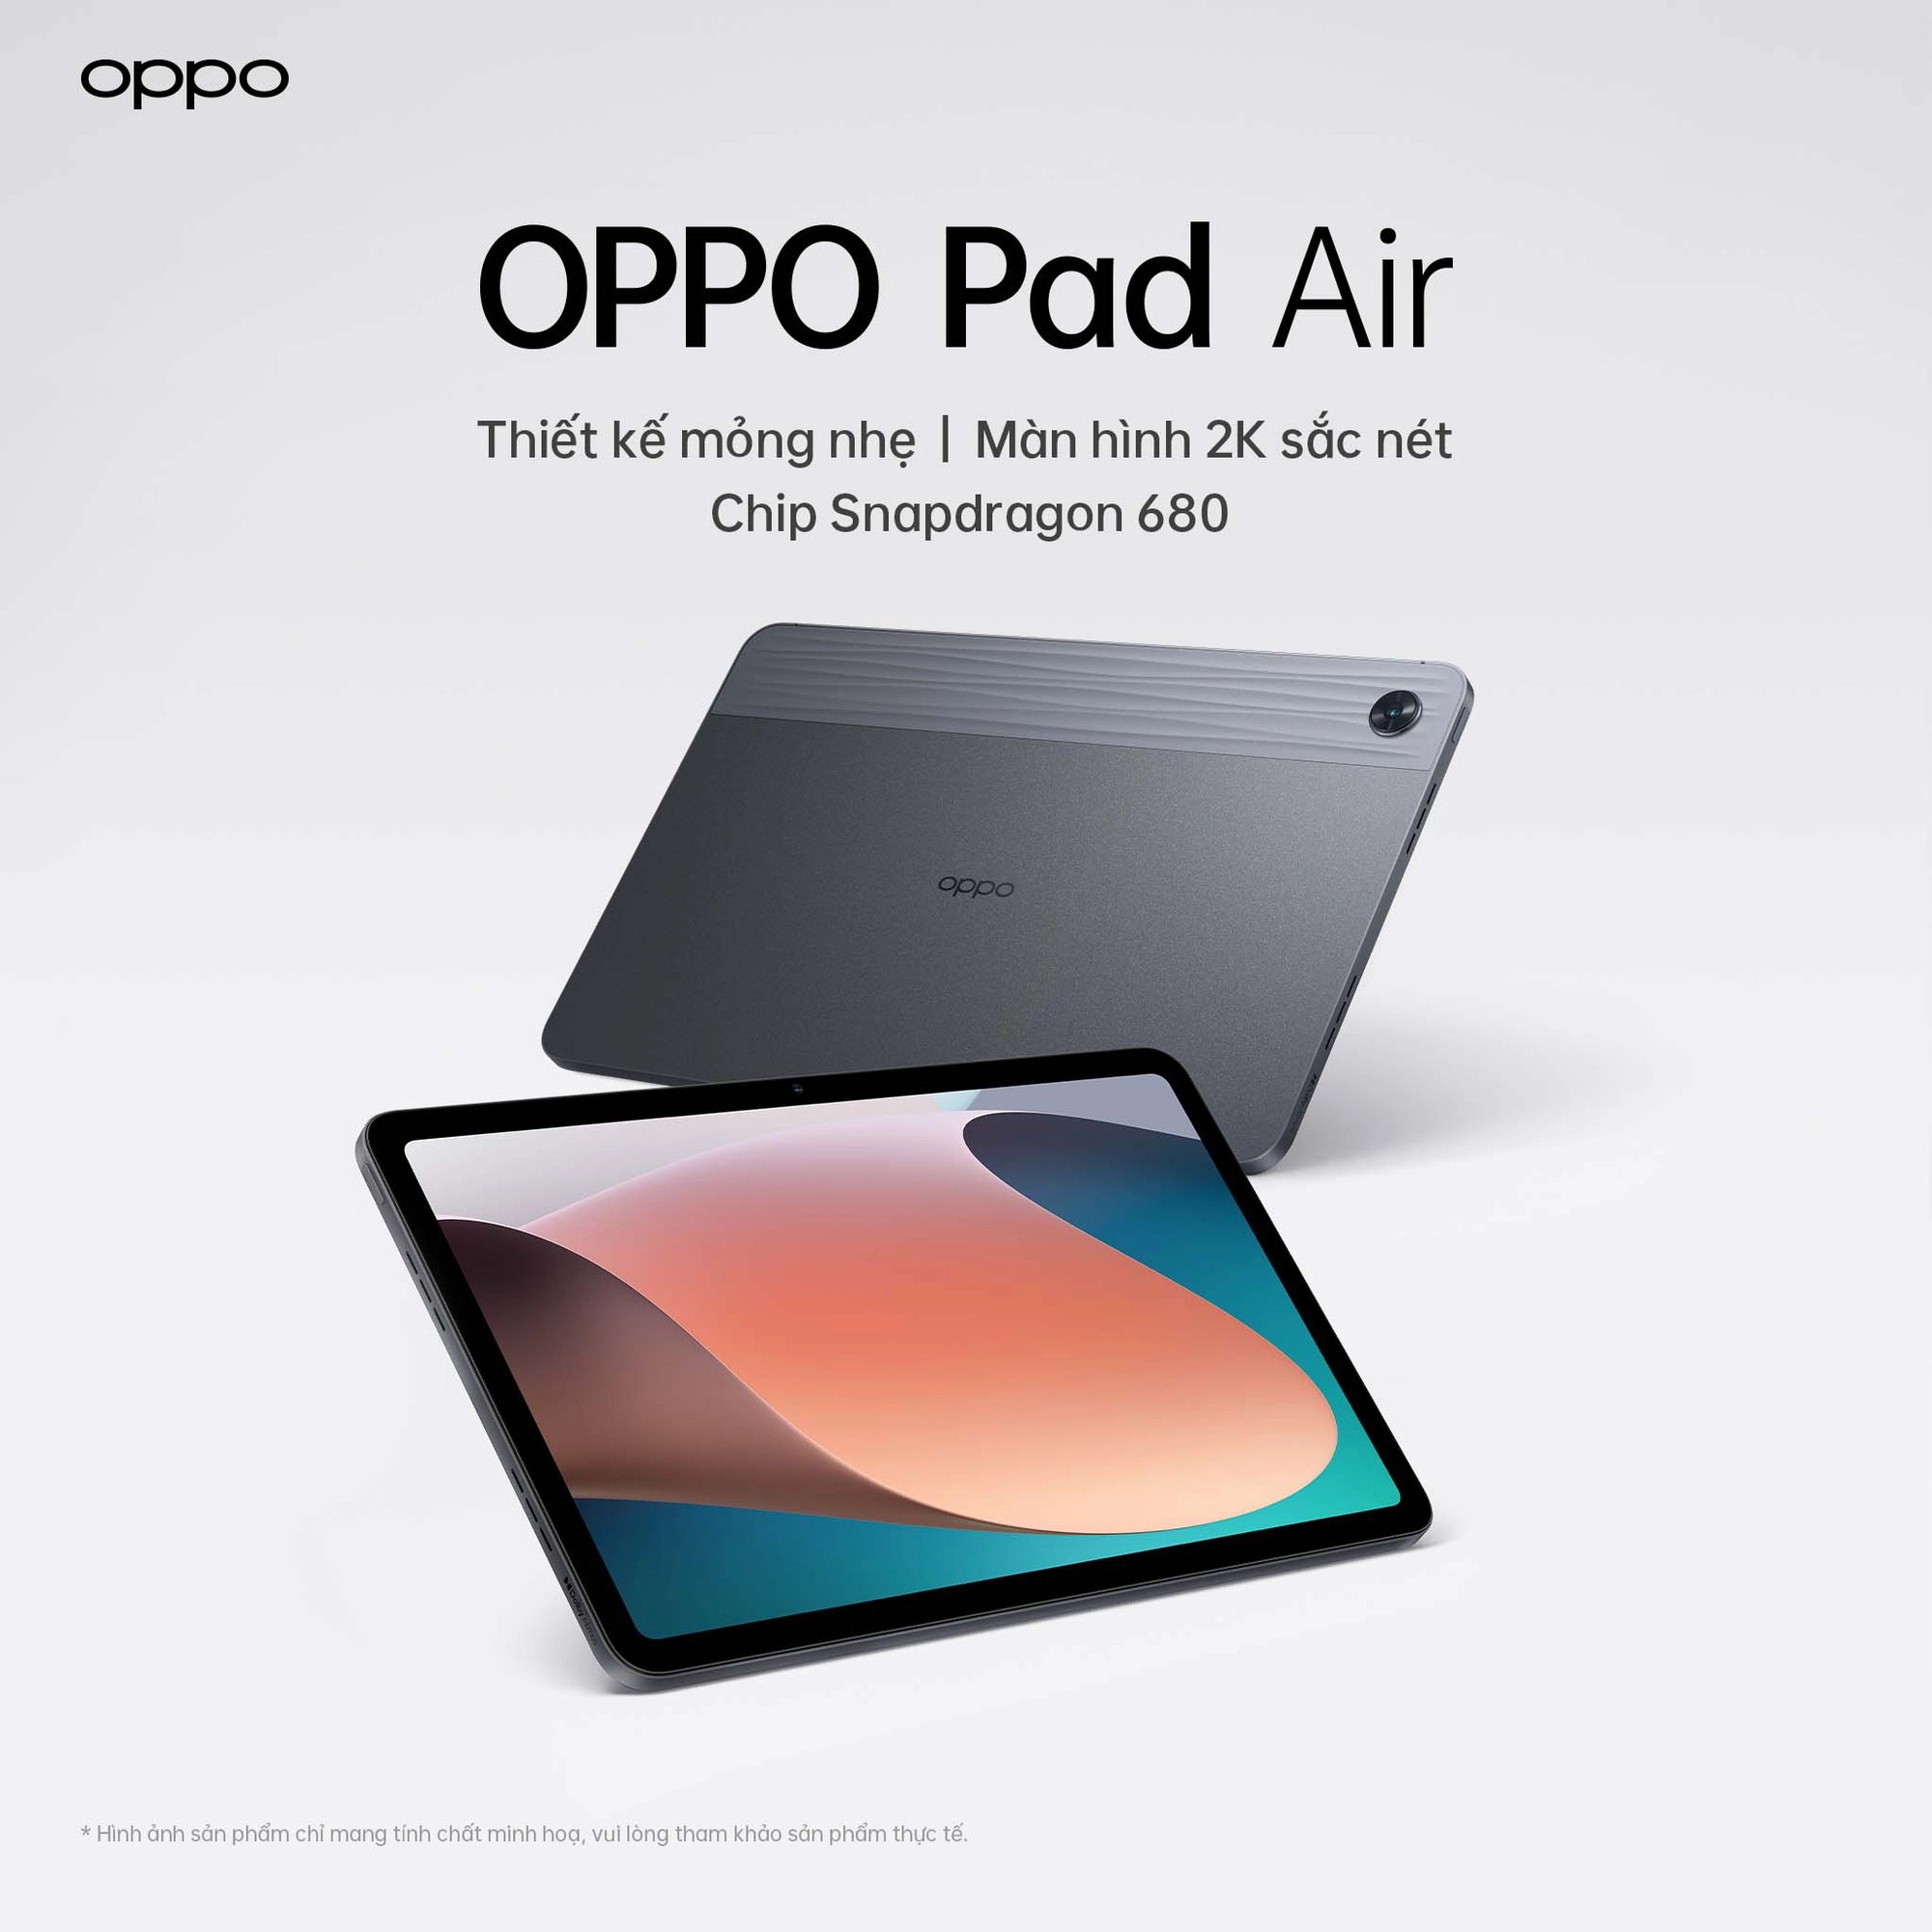 OPPO chuẩn bị ra mắt tablet đầu tiên tại Việt Nam hứa hẹn mức giá cạnh tranh